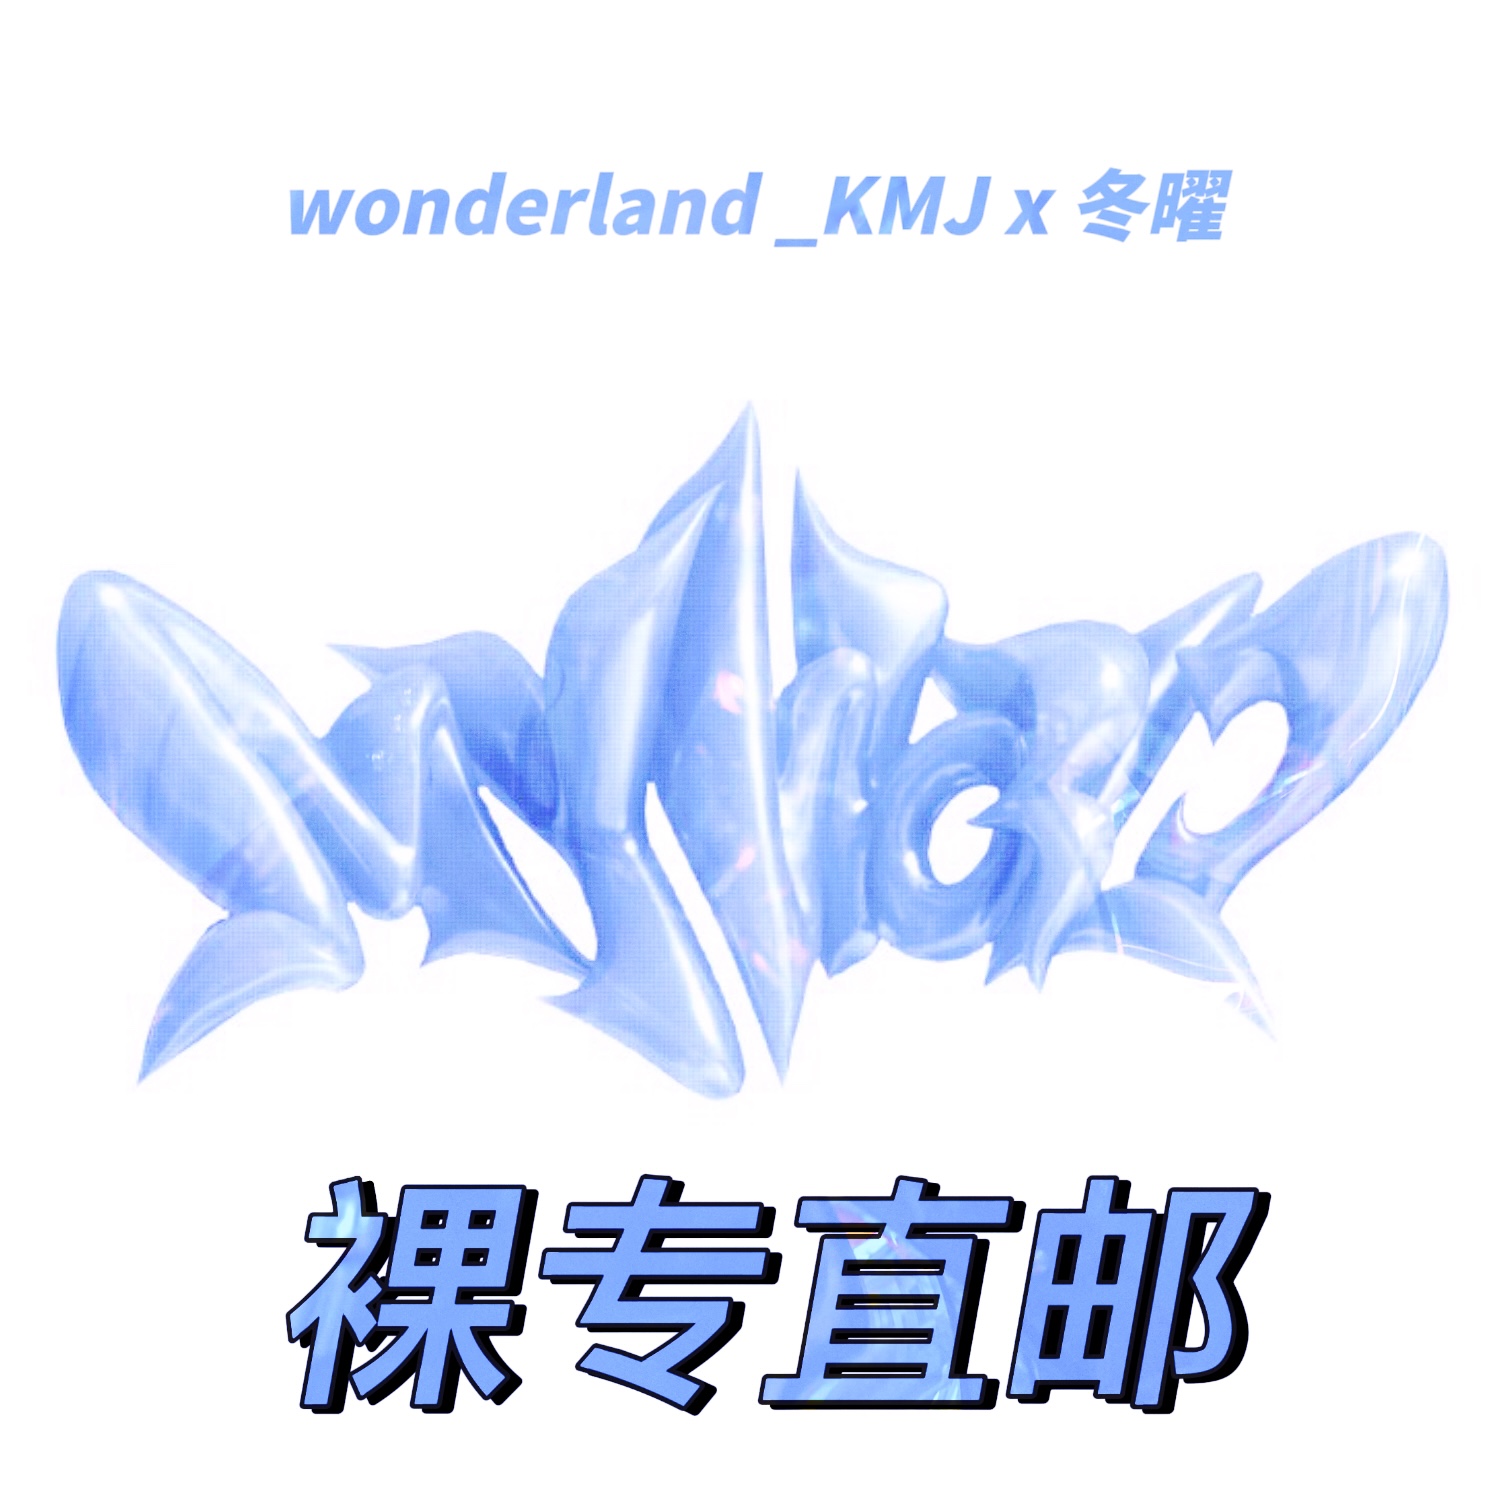 [全款 裸专] aespa - 迷你3辑 [MY WORLD] (Poster Ver.) (随机版本)_两站联合